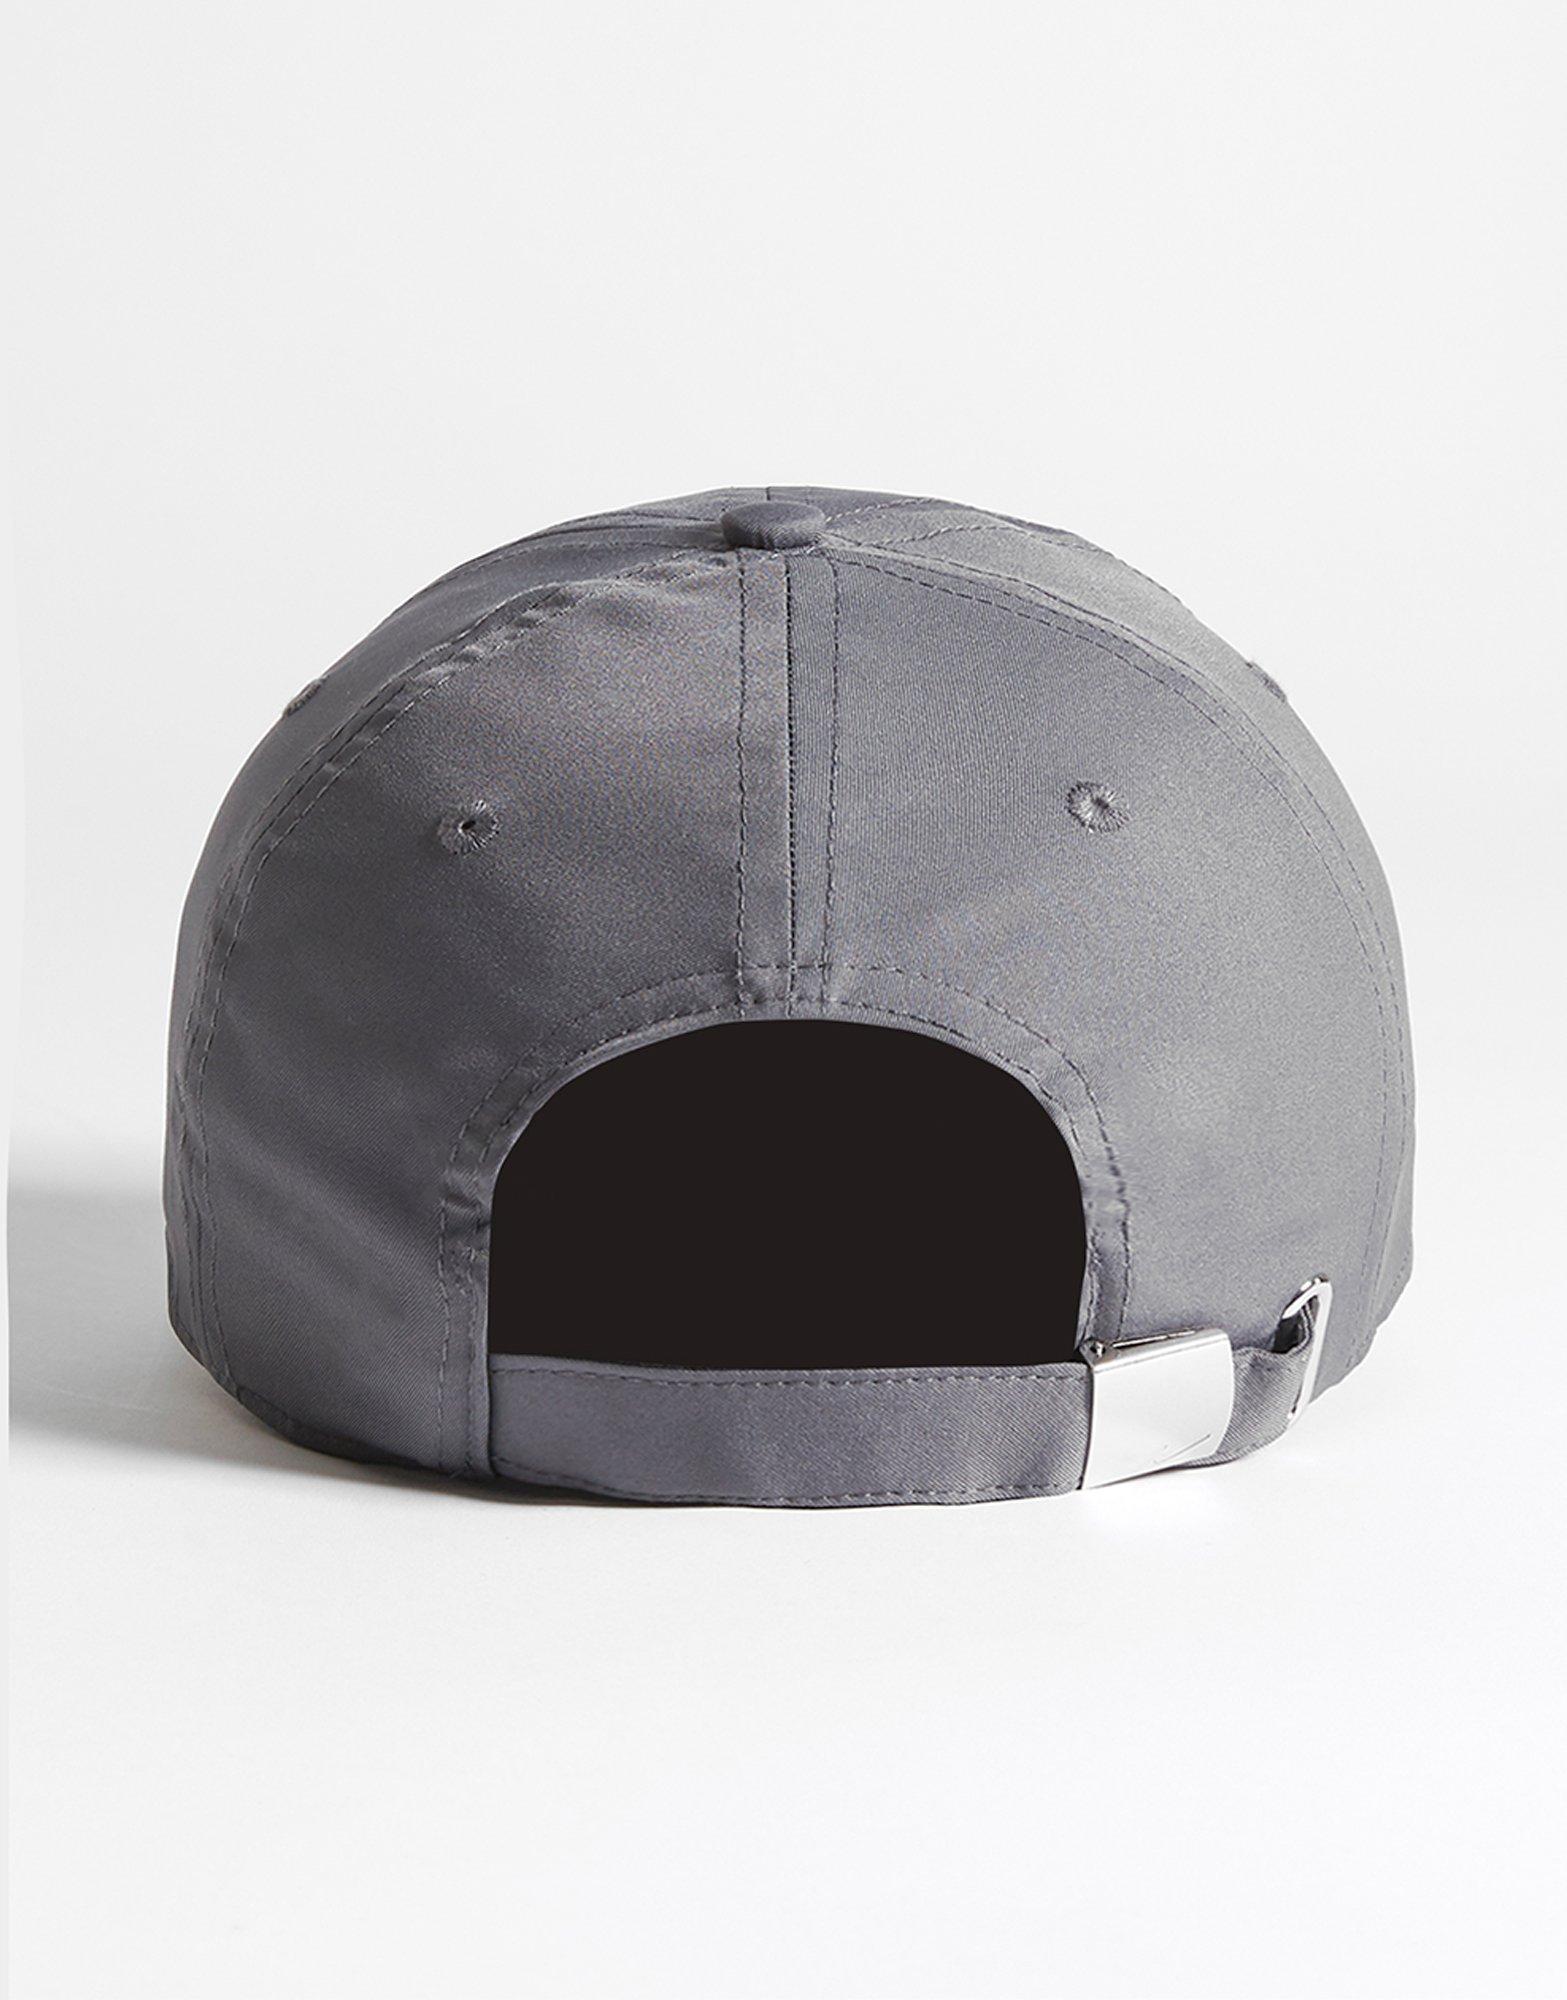 grey nike baseball cap